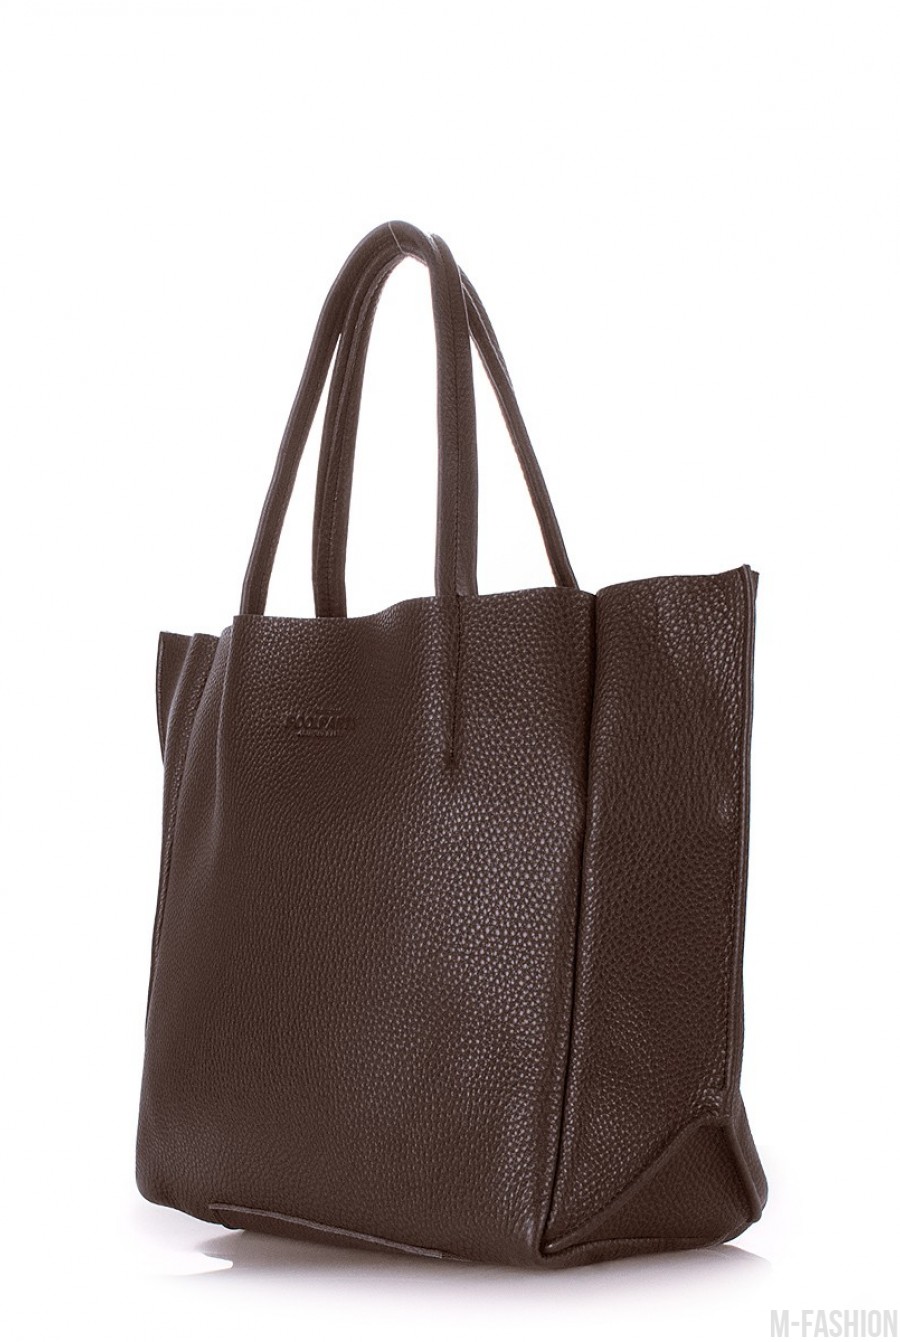 Кожаная коричневая сумка Soho классического дизайна- Фото 2